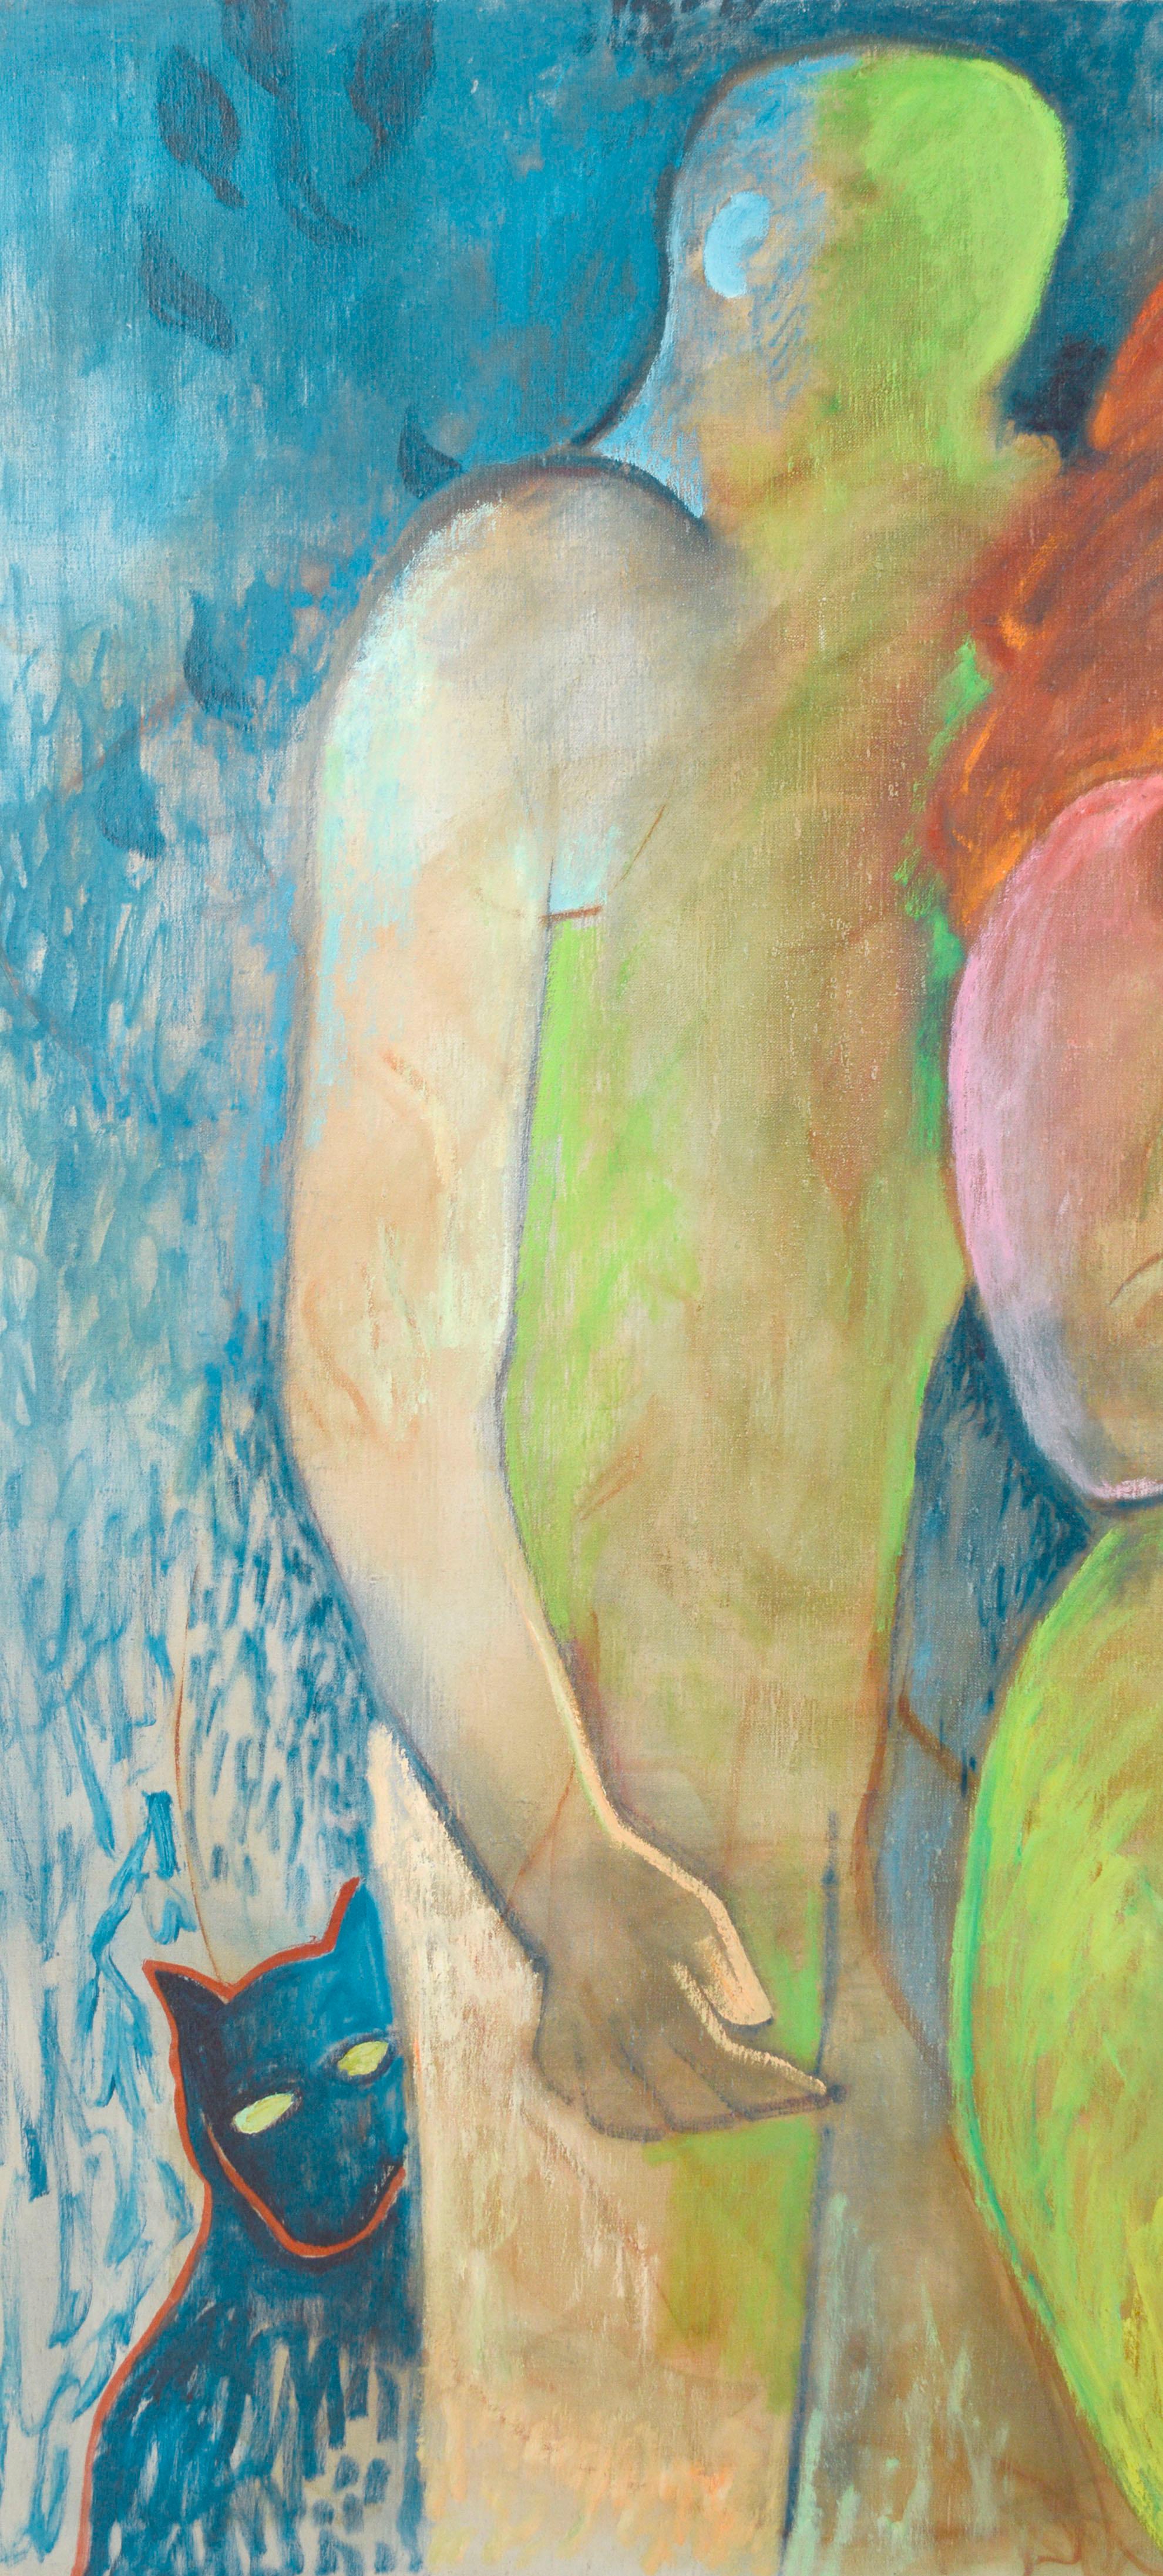 Buntes und dynamisches fauvistisches abstraktes Bild mit zwei Figuren und einer Katze in einer lebhaften und leuchtenden Farbpalette des kalifornischen Künstlers Don Klopfer (1920-2009). Unsigniert, wurde aber mit einer Sammlung seiner Werke aus dem